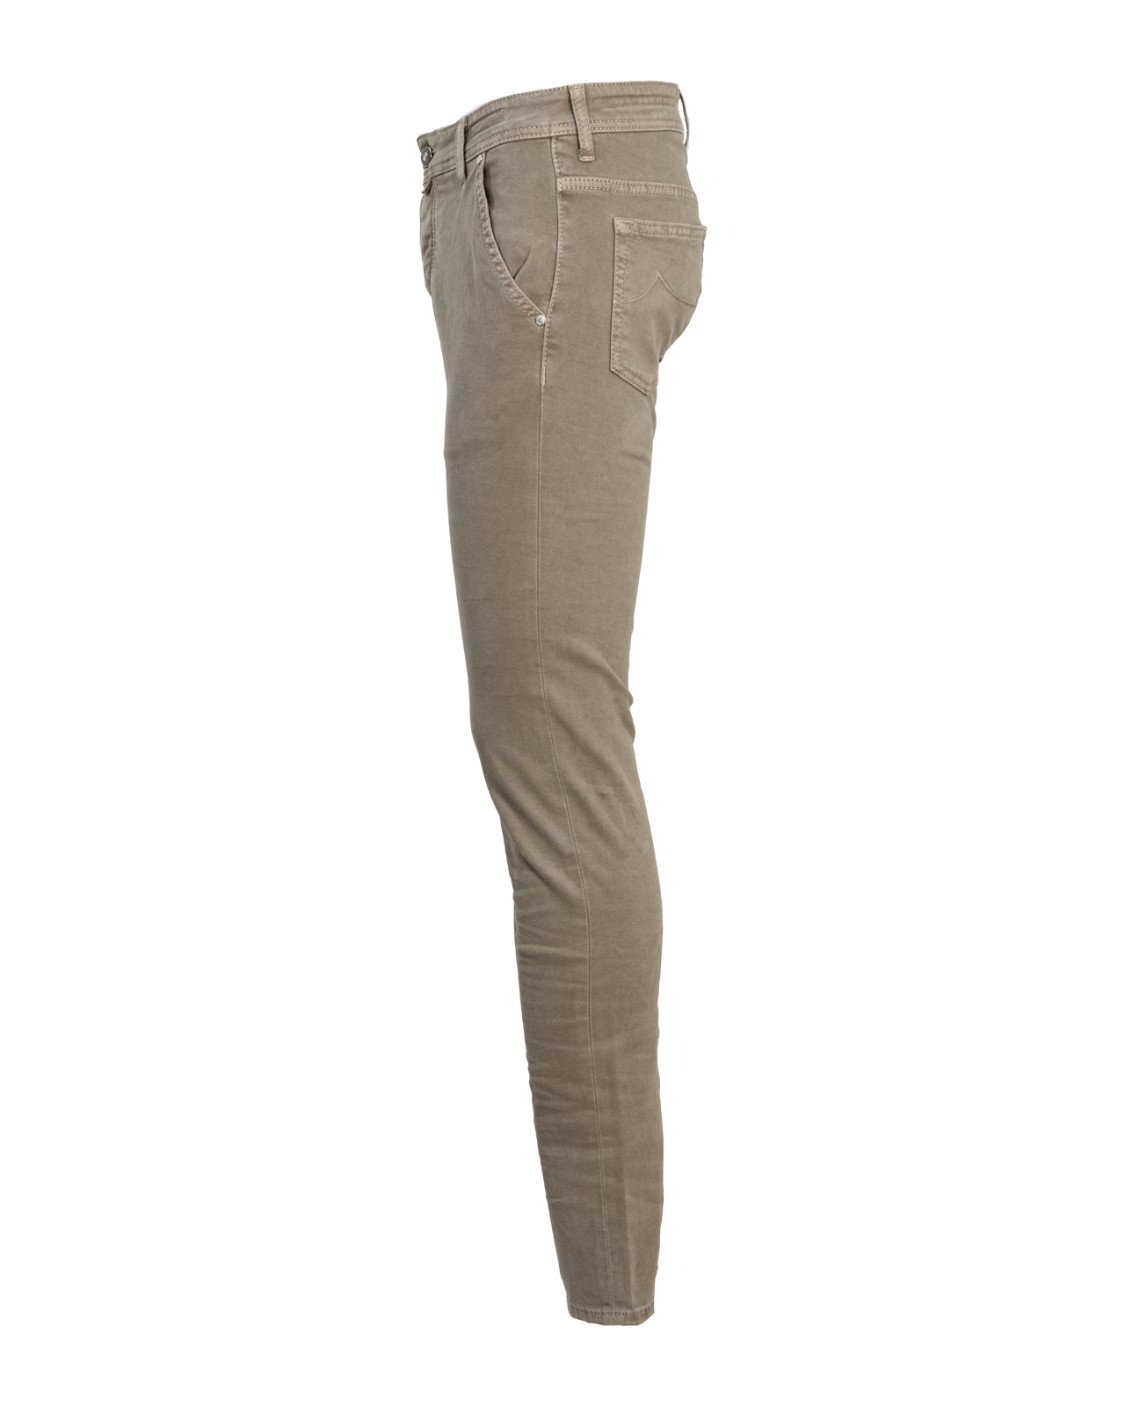 shop JACOB COHEN Saldi Jeans: Jacob Cohen pantalone in cotone elasticizzato.
Modello Leonard (ex 613) con tasca america.
Composizione: 97% cotone 3% elastan.
Made in Italy.. UQM0801 S3657-D37 number 5317096